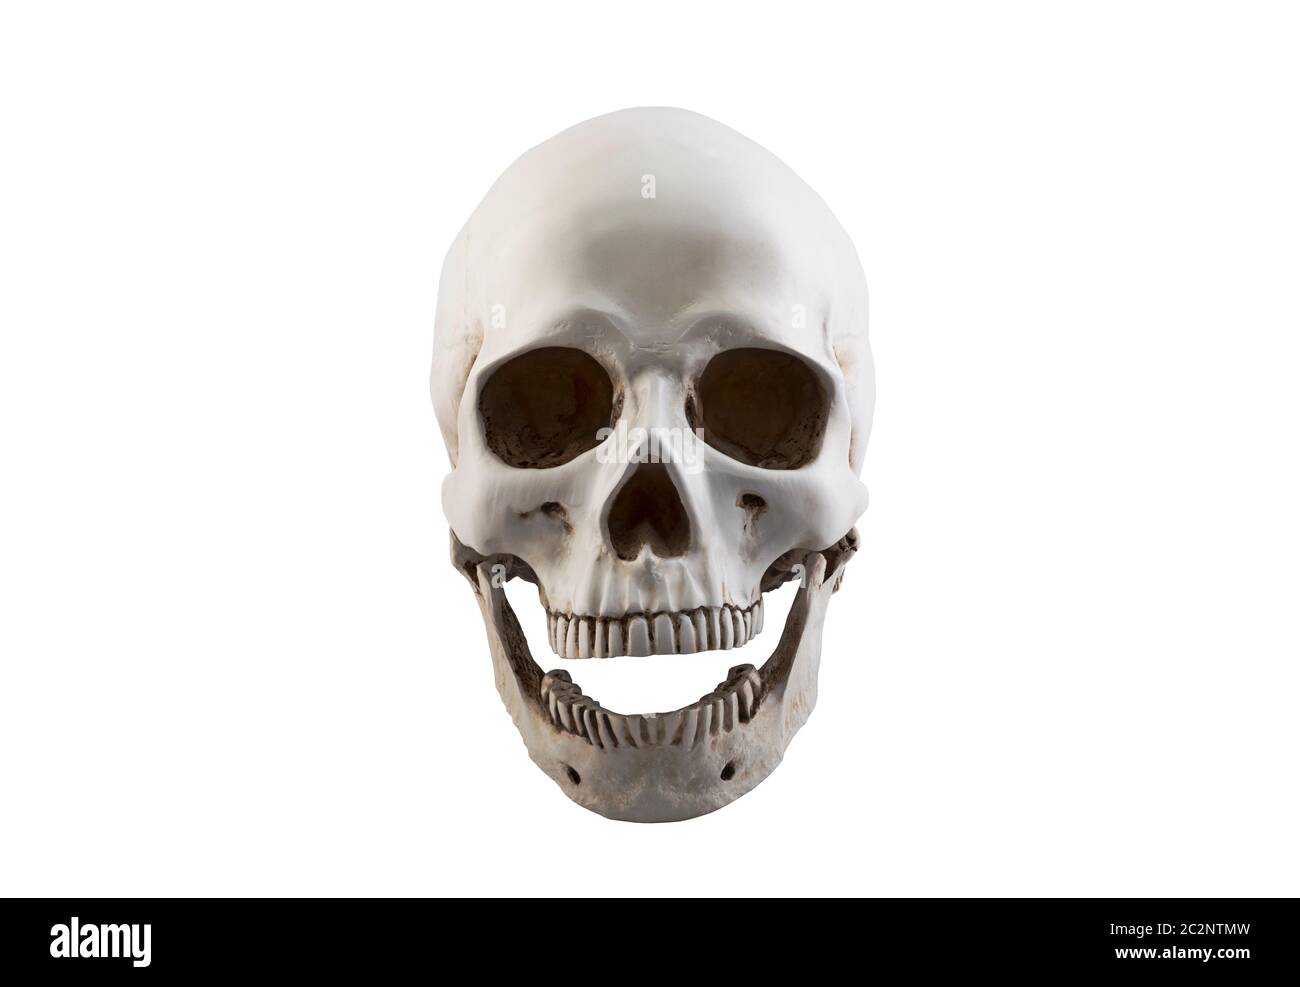 Cranio umano con ganascia aperta isolata su sfondo bianco con tracciato di ritaglio Foto Stock